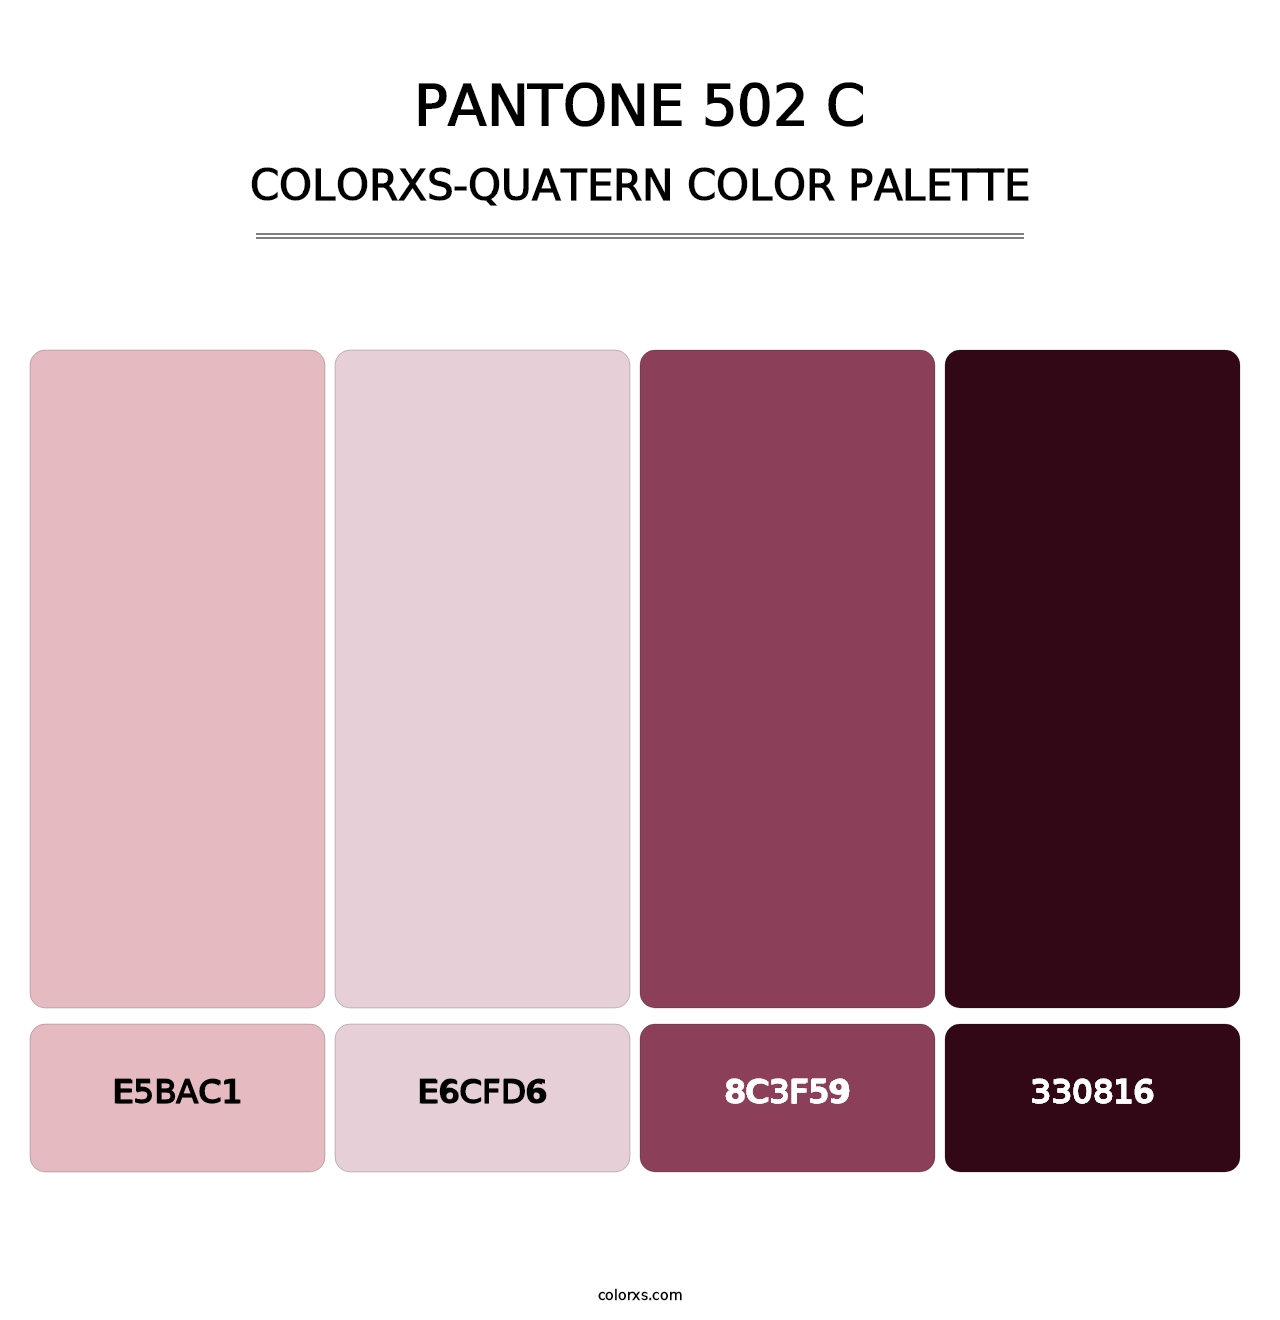 PANTONE 502 C - Colorxs Quatern Palette